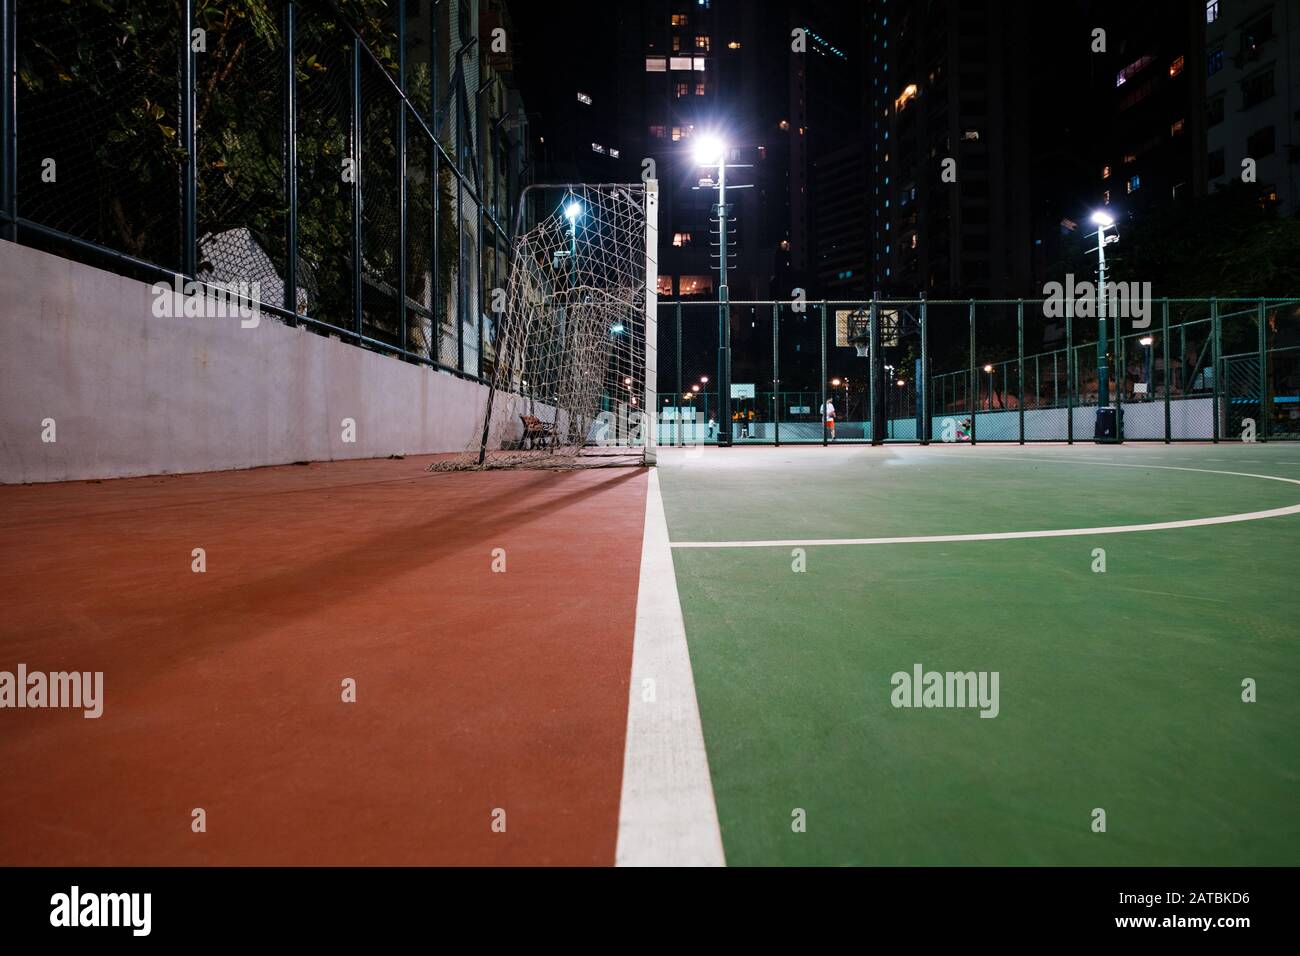 Fußballplatz in der Stadt, Sportplatz in der Nacht - Stockfoto